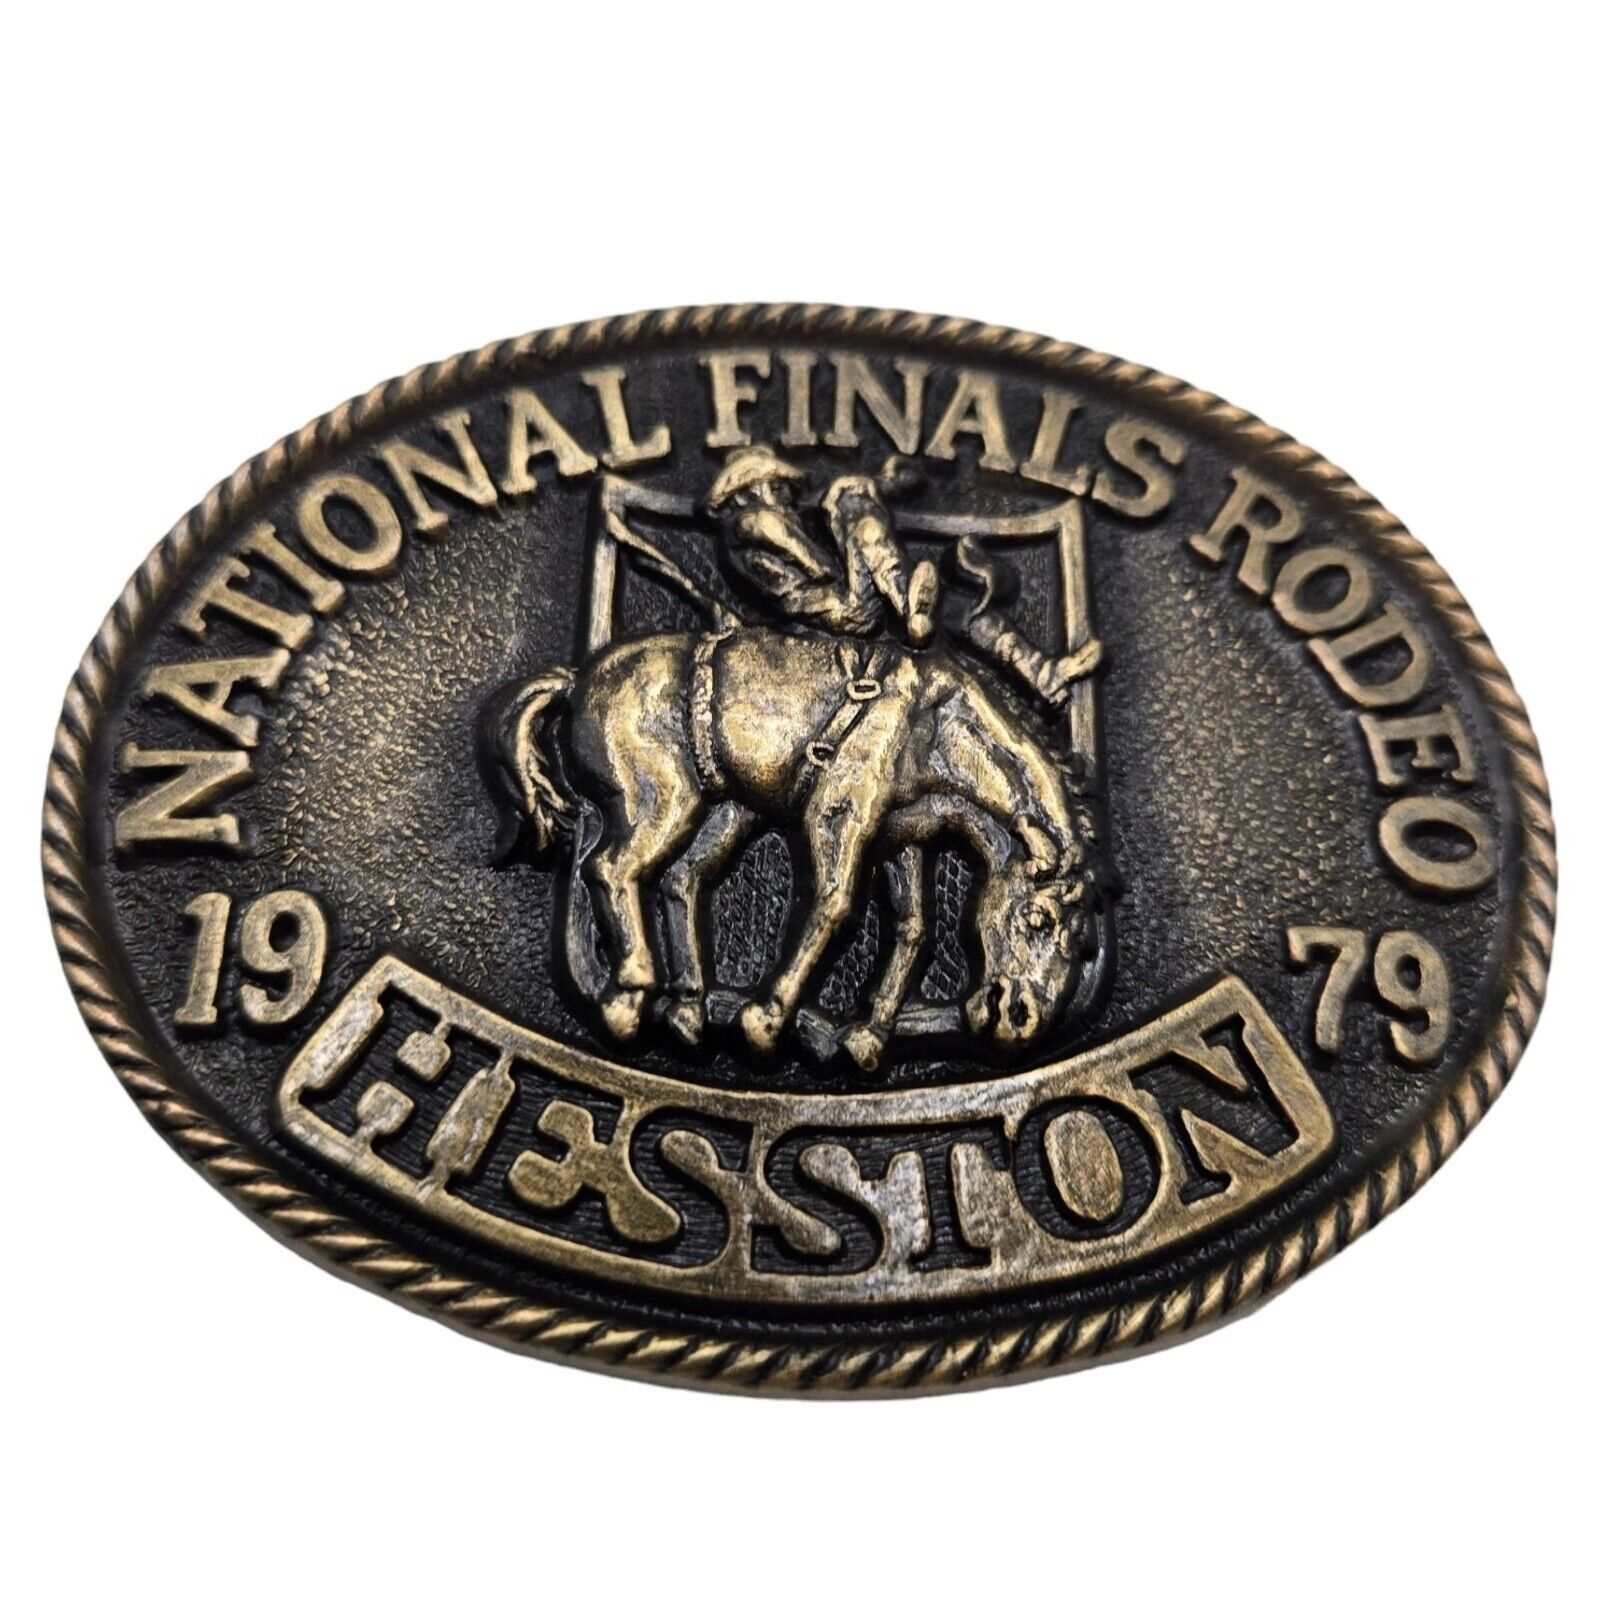 1979 NFR Rodeo Belt Buckle NOS National Finals Cowboy Western Bareback Bronc